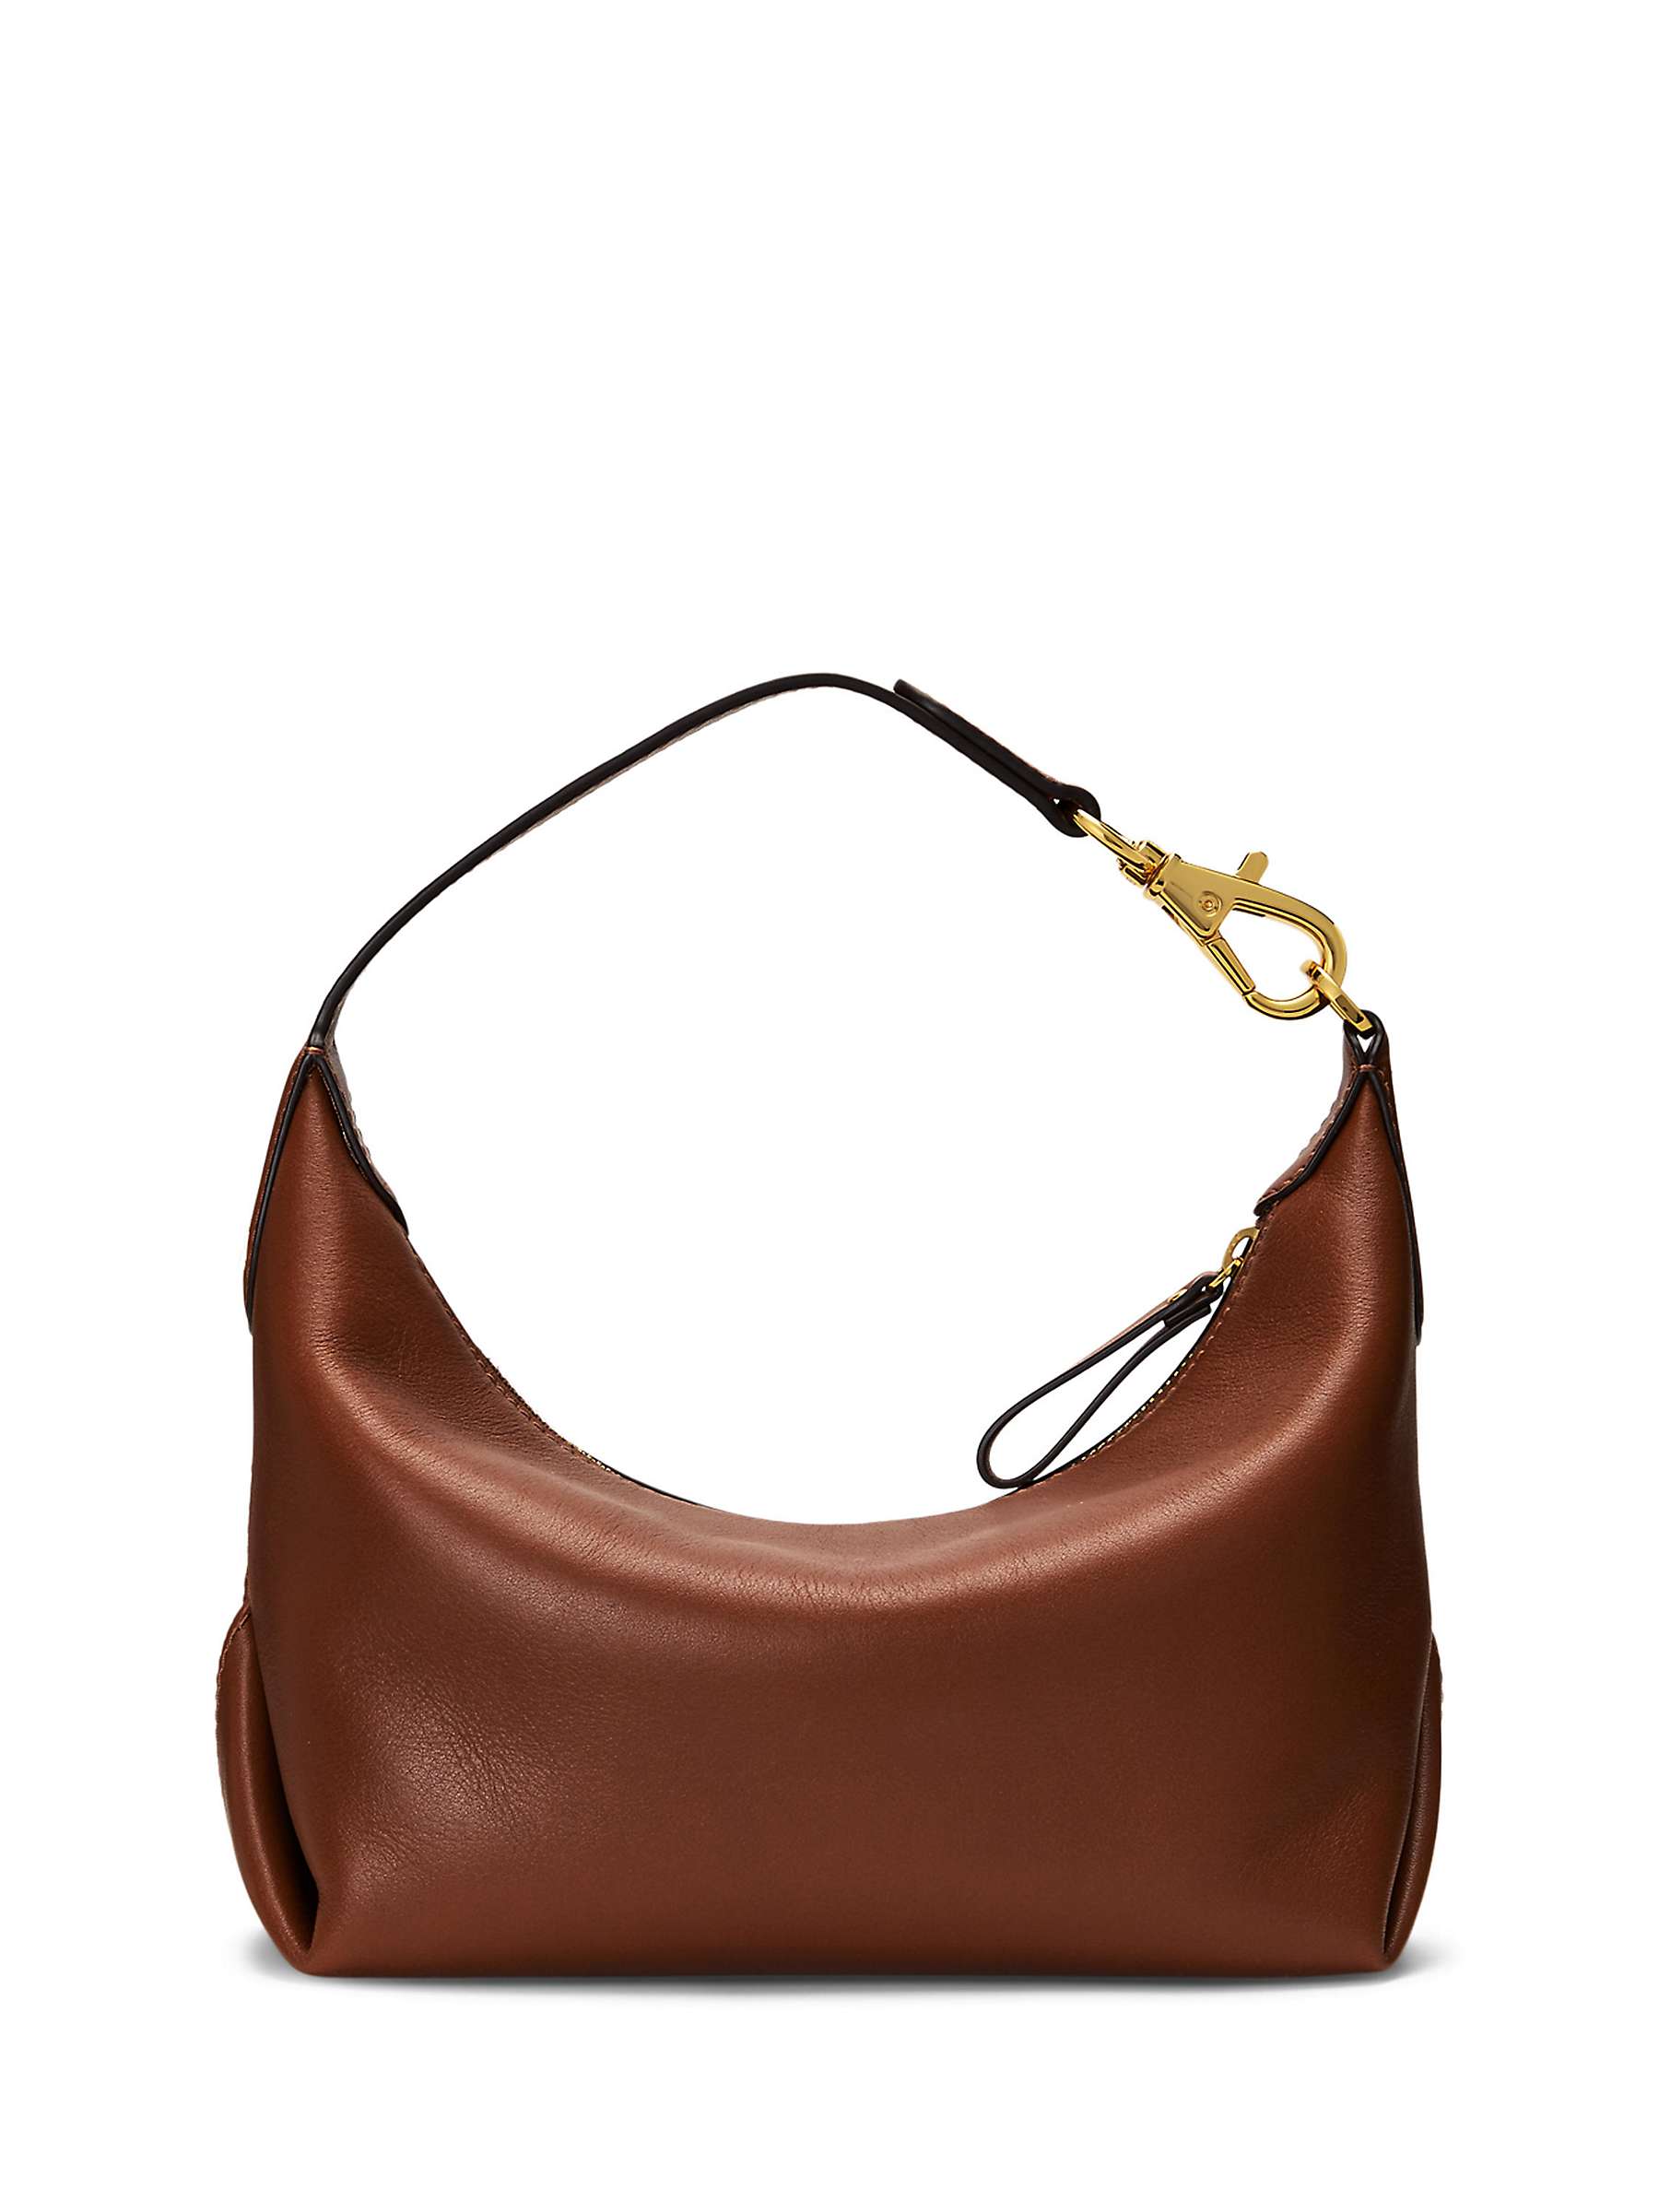 Buy Lauren Ralph Lauren Kassie Small Leather Shoulder Bag Online at johnlewis.com